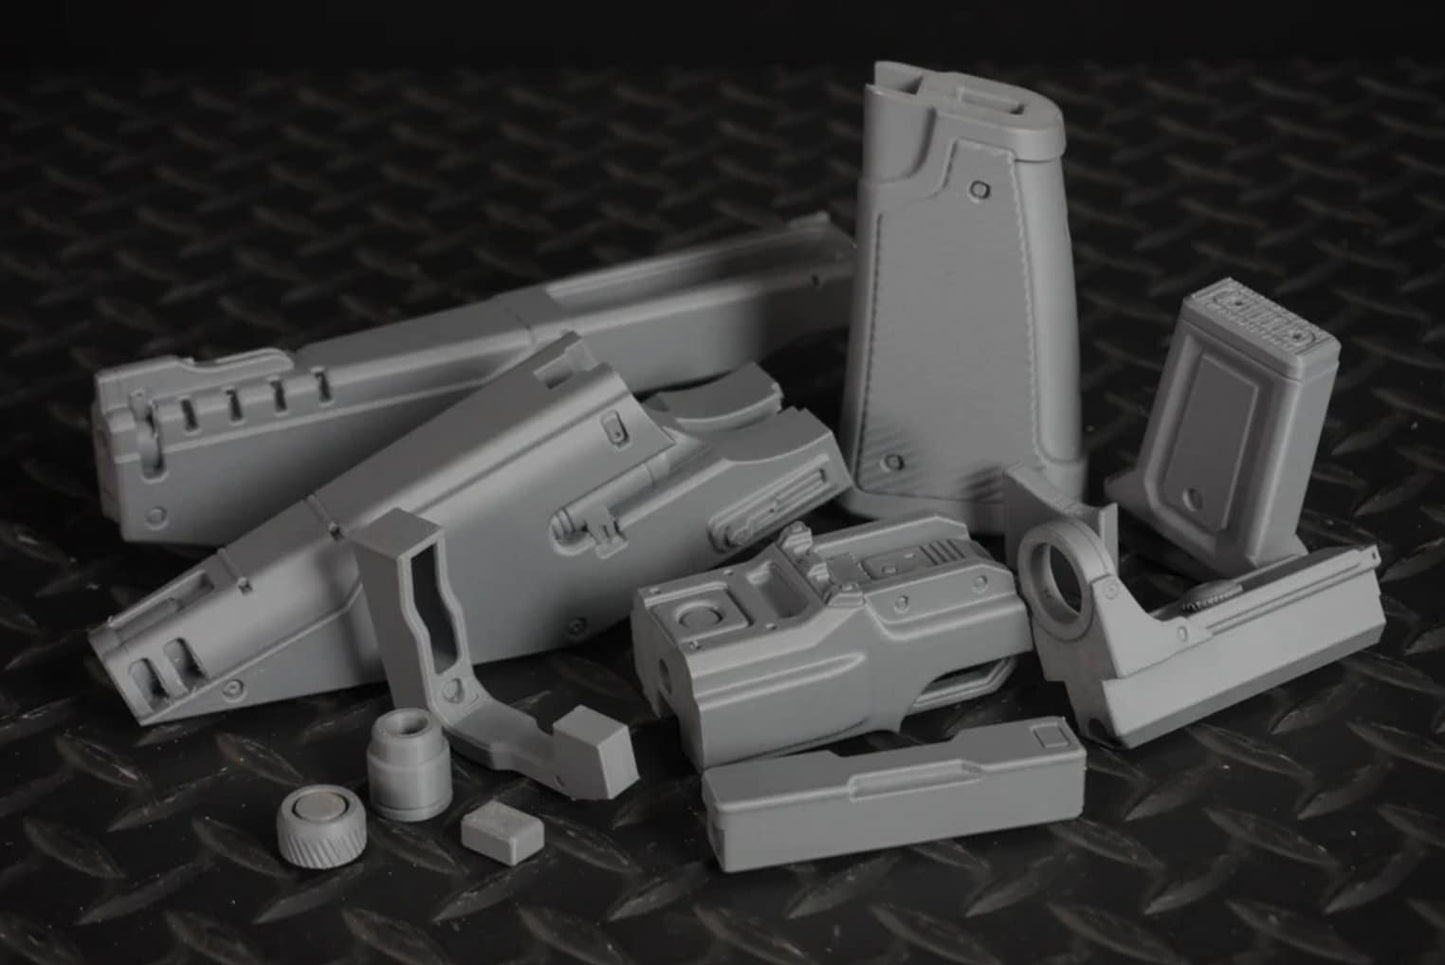 Westar 35 Mandalorian Blaster Replica - 3D Printed Prop For Cosplay & Display